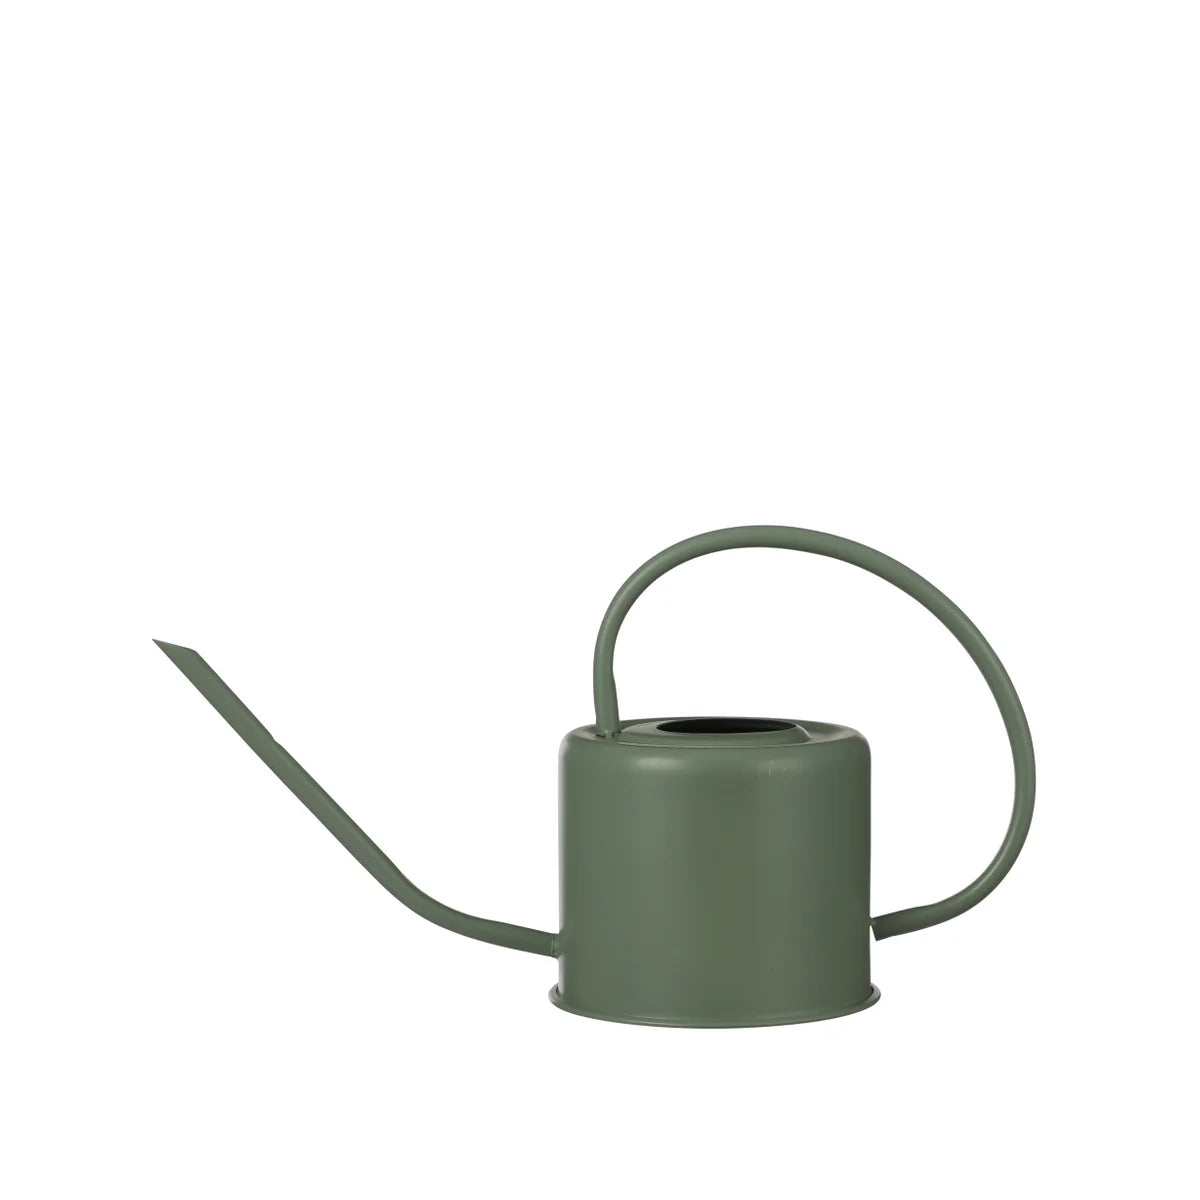 Arrosoir en métal vert - Ancho watering can green - 14.25x5.5x7"